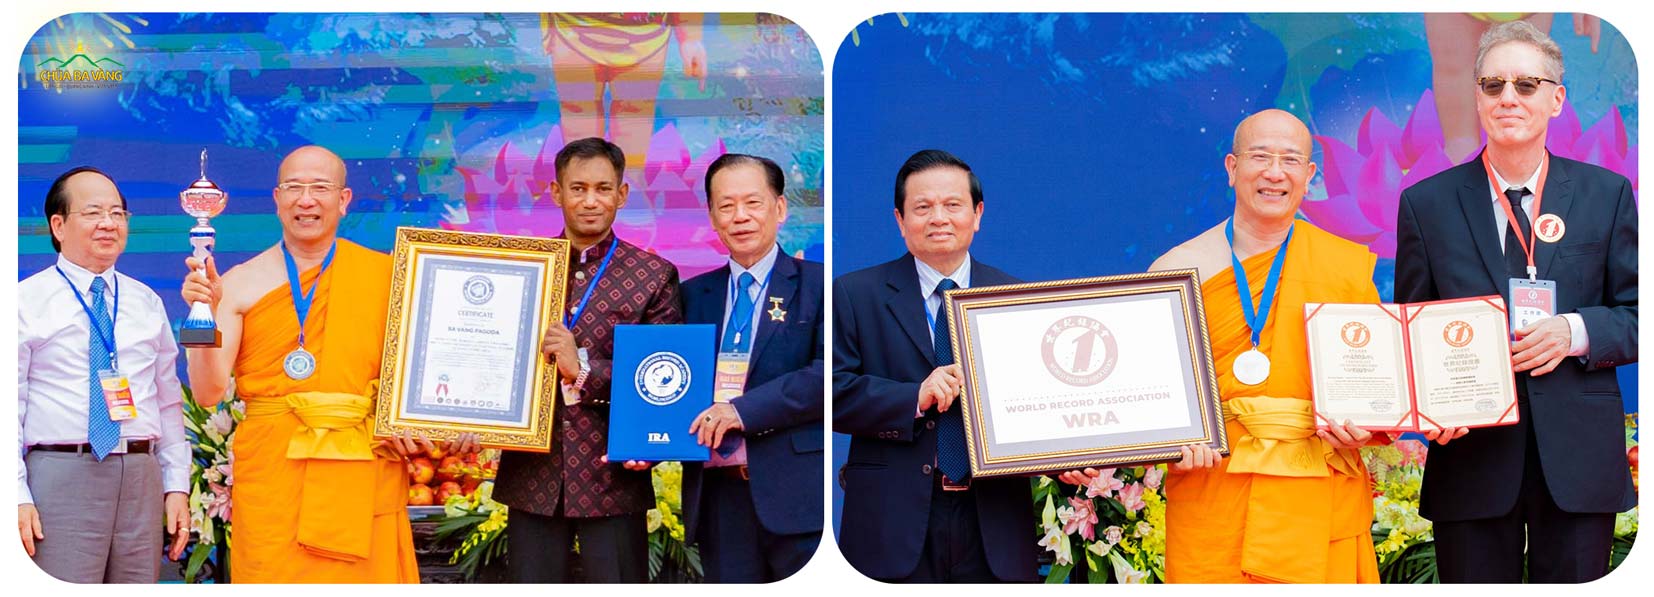 Thầy Thích Trúc Thái Minh đón nhận kỷ lục tòa giảng đường trên núi lớn nhất thế giới từ Liên minh Kỷ lục Thế giới – WorldKings và Hiệp hội kỷ lục thế giới WRA xác lập